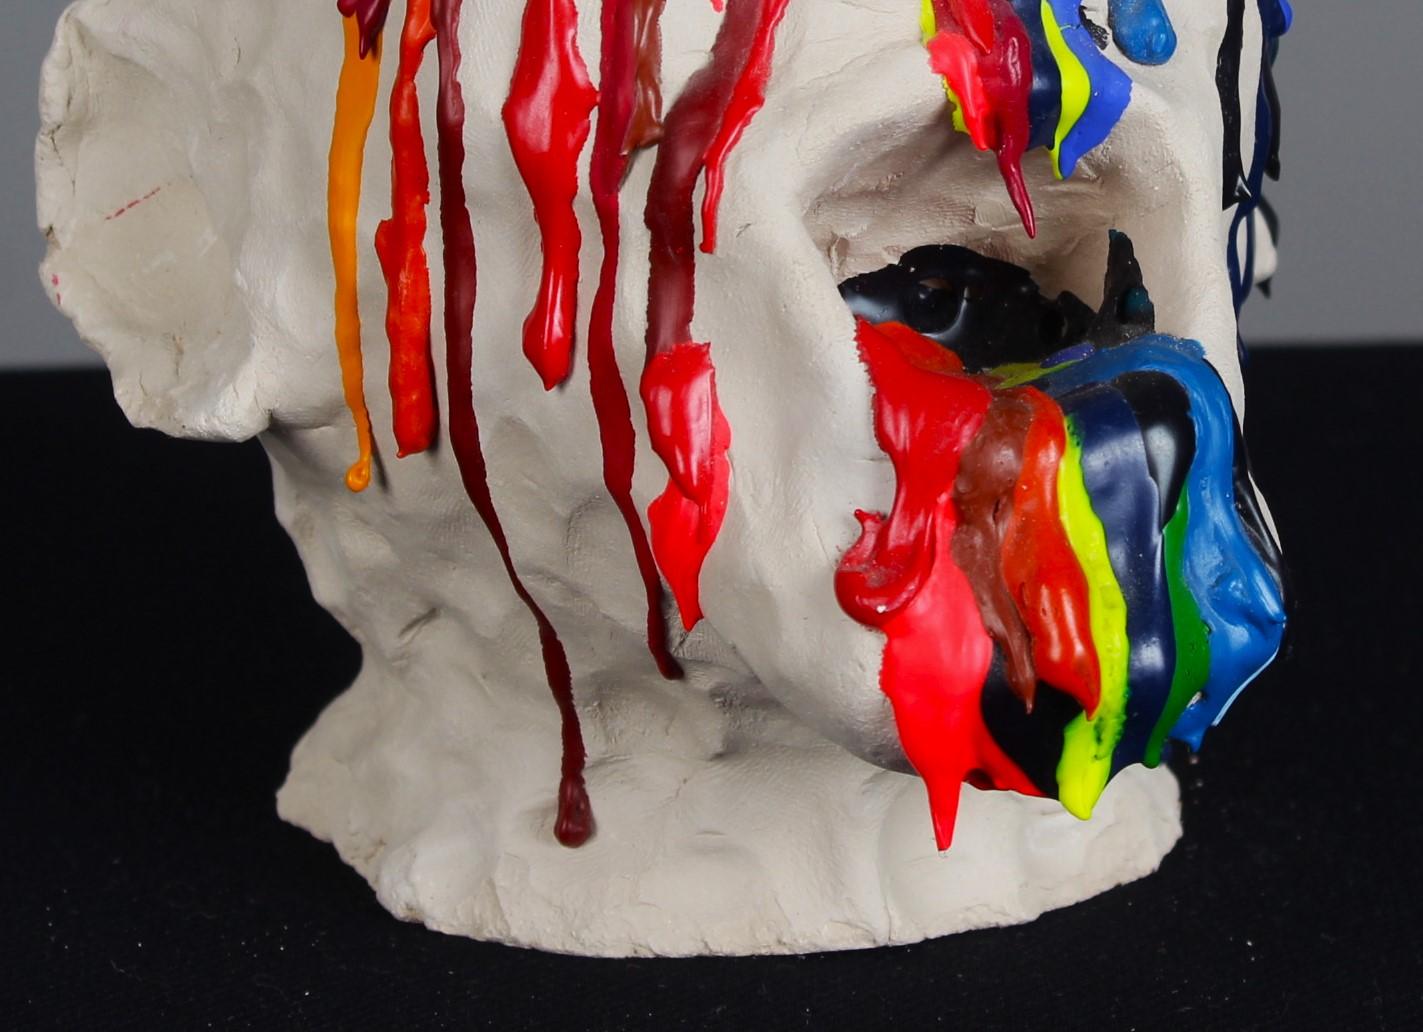 Handgefertigte Skulptur eines Kopfes. 
Aus den Augen, der Nase und dem Mund strömt bunte Acrylfarbe.
Unbekannter Künstler, 21. Jahrhundert.